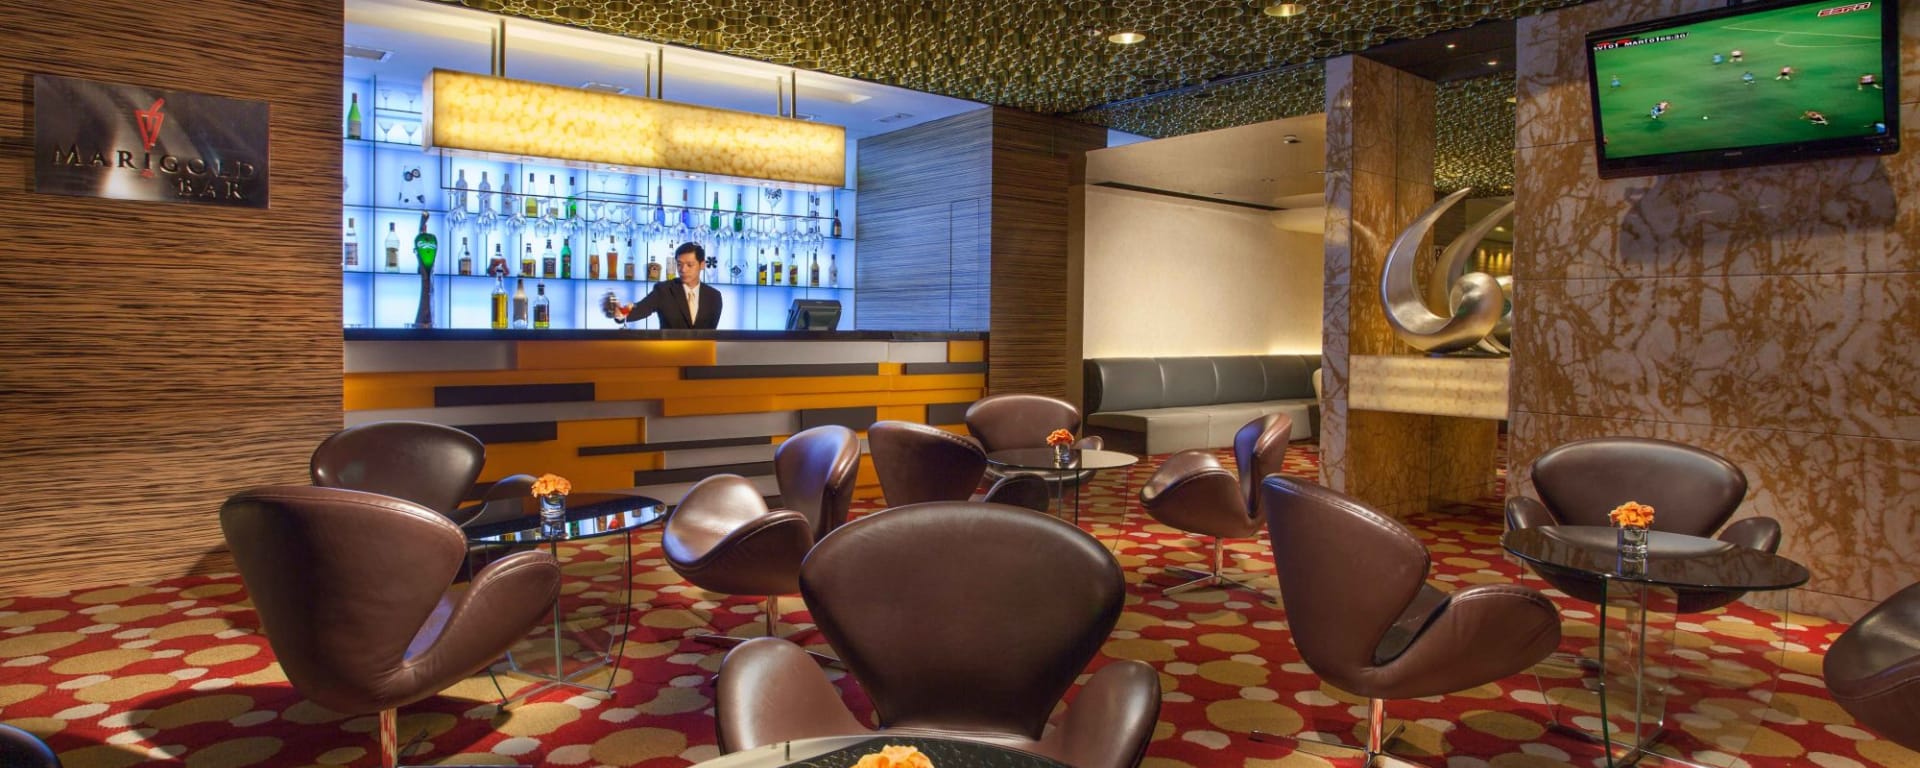 Park Hotel Hong Kong: Marigold Bar